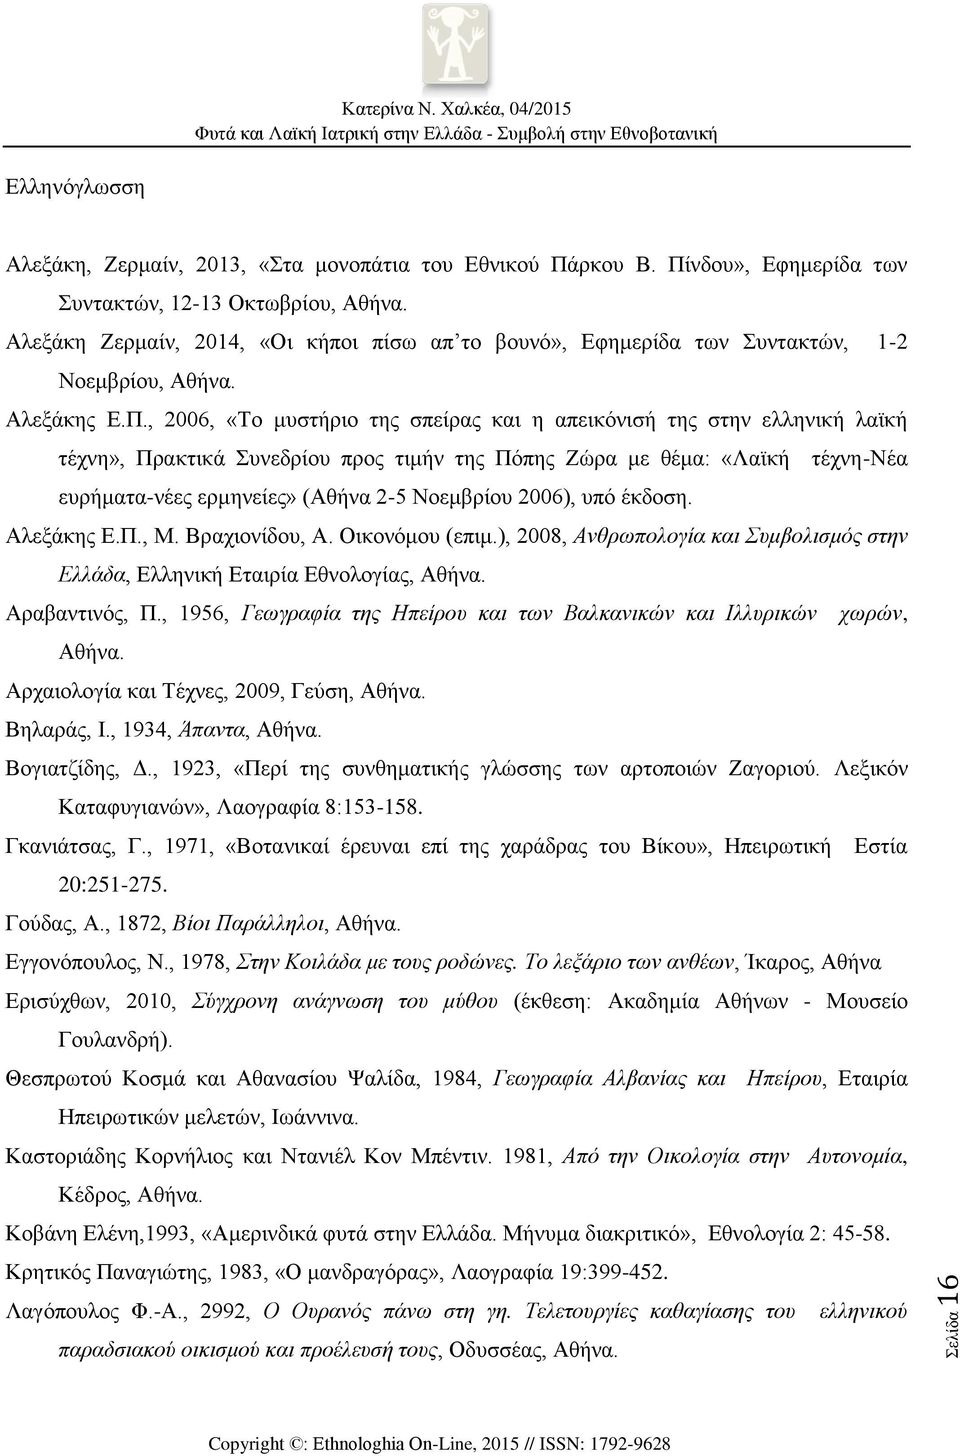 , 2006, «Το μυστήριο της σπείρας και η απεικόνισή της στην ελληνική λαϊκή τέχνη», Πρακτικά Συνεδρίου προς τιμήν της Πόπης Ζώρα με θέμα: «Λαϊκή τέχνη-νέα ευρήματα-νέες ερμηνείες» (Αθήνα 2-5 Νοεμβρίου